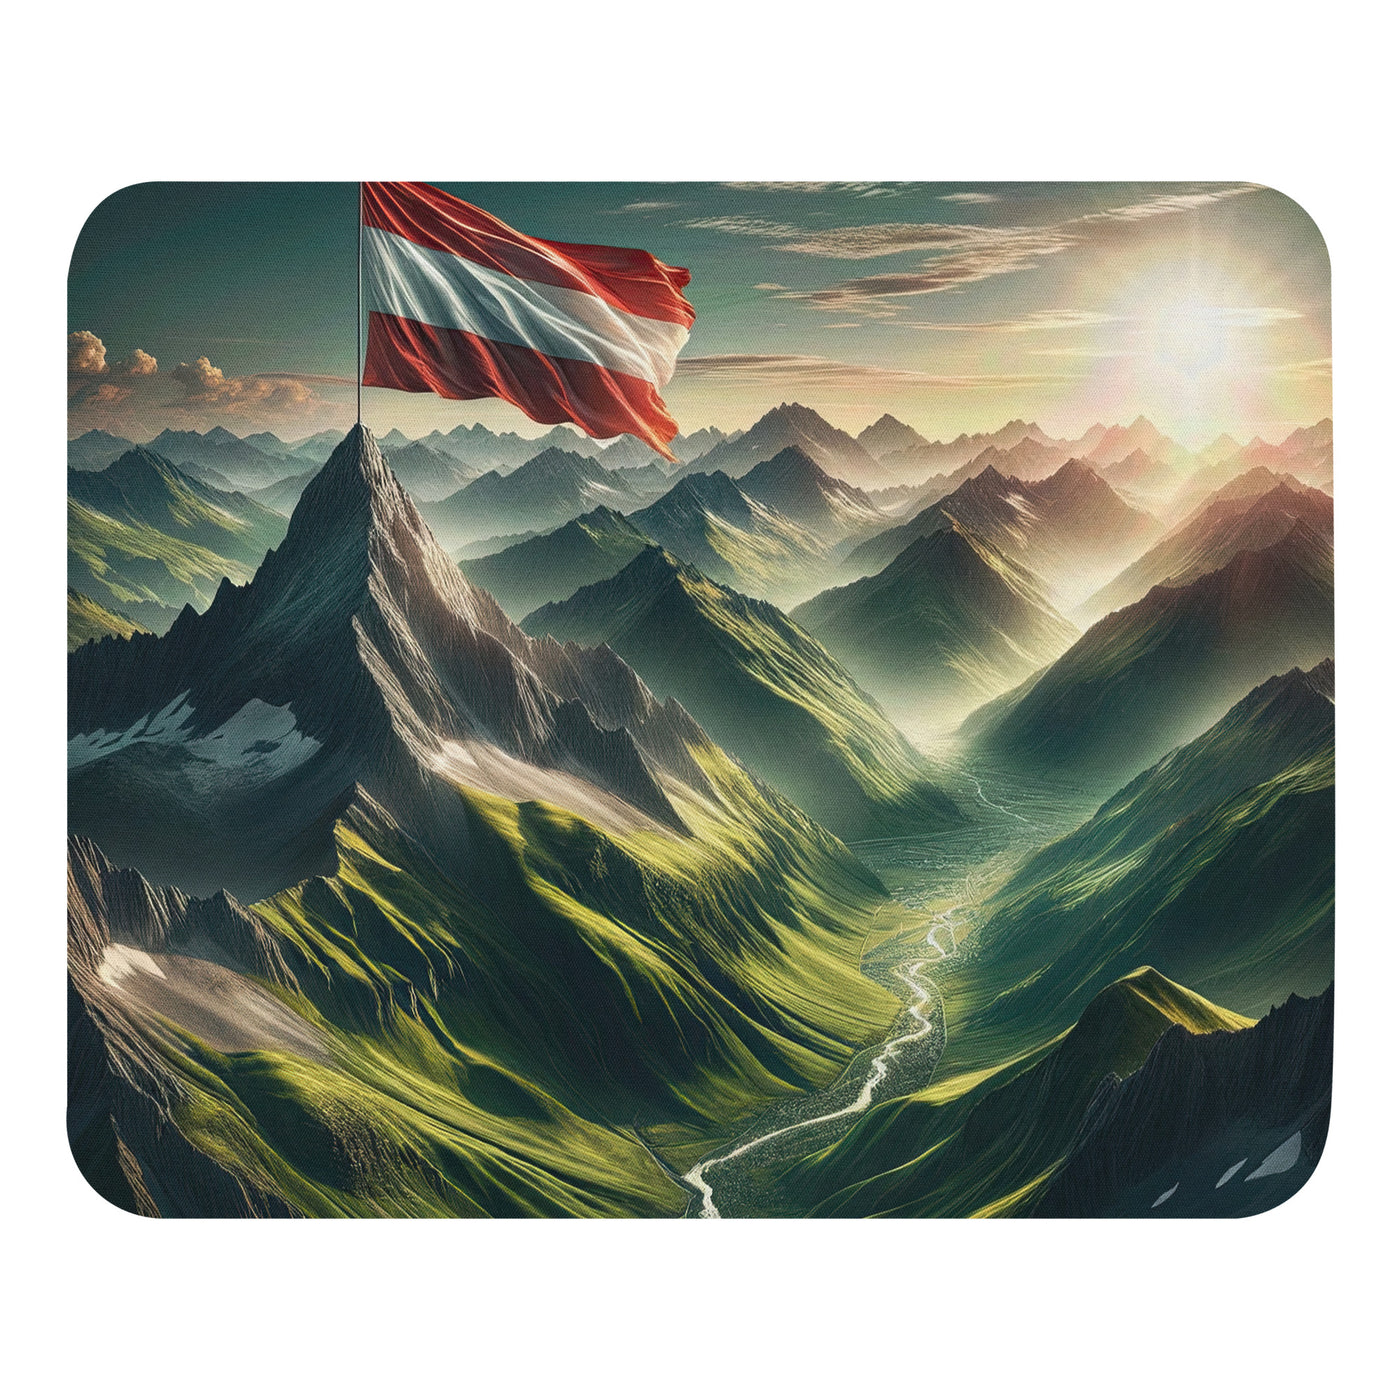 Alpen Gebirge: Fotorealistische Bergfläche mit Österreichischer Flagge - Mauspad berge xxx yyy zzz Default Title